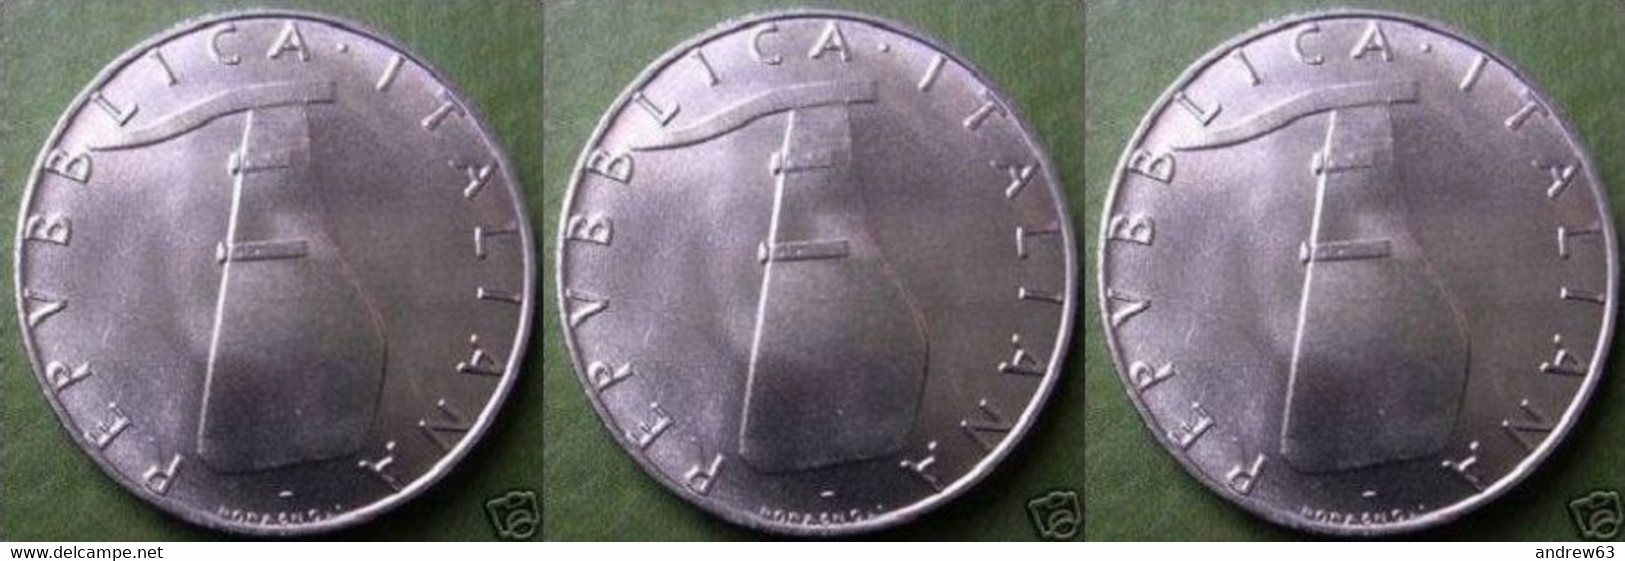 ITALIA - Lire 5 1980 - FDC/Unc Da Rotolino/from Roll 3 Monete/3 Coins - 5 Liras